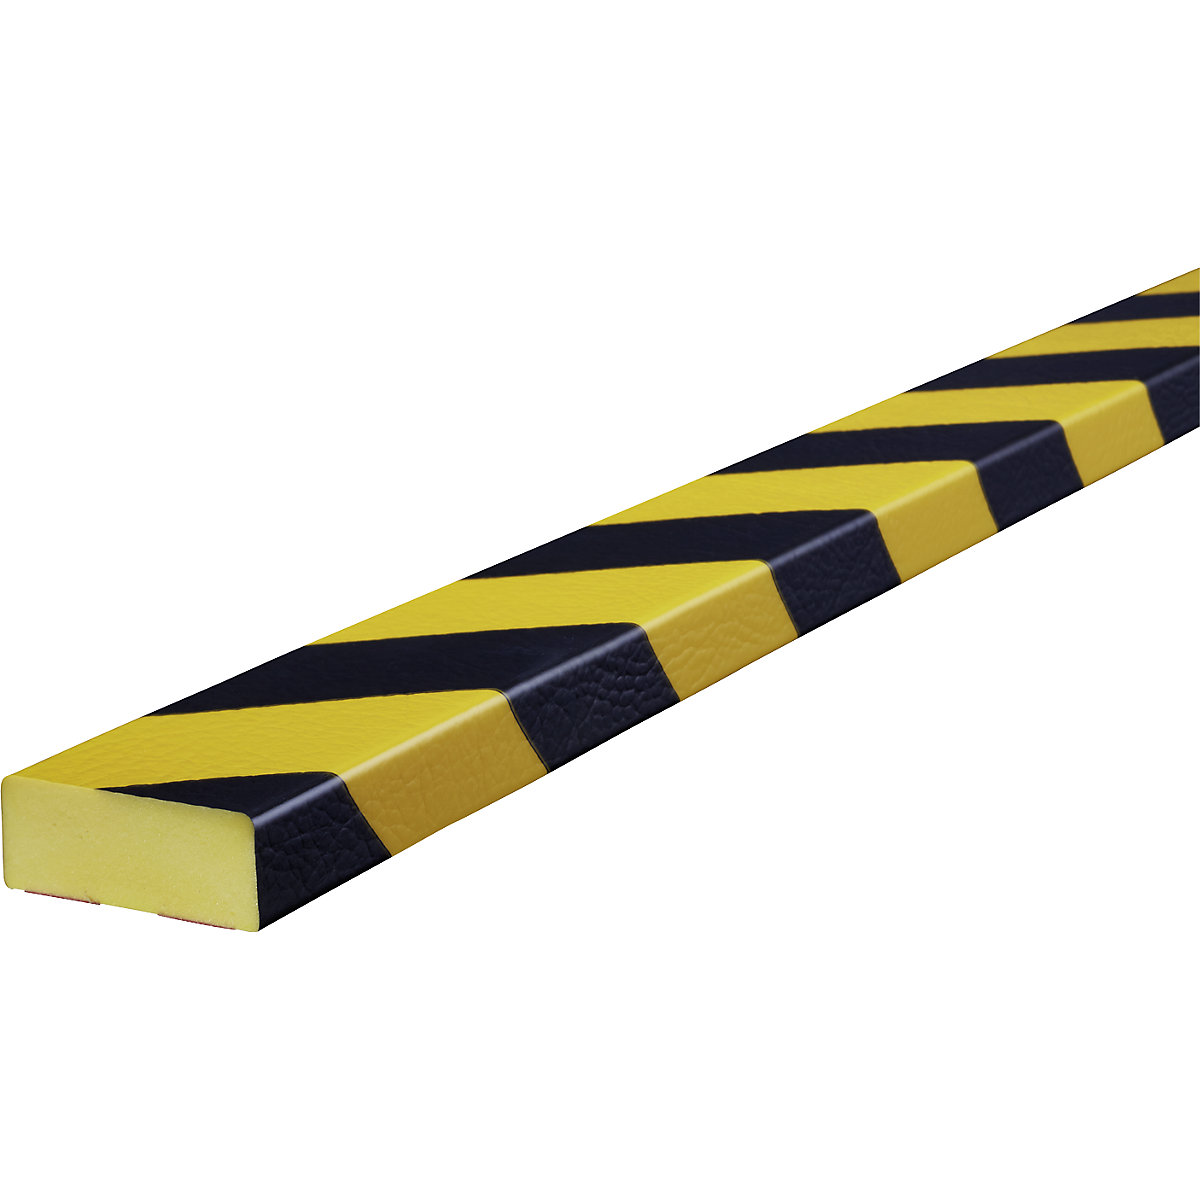 Knuffi®-oppervlaktebescherming – SHG, type D, stuk van 1 m, zwart/geel-20